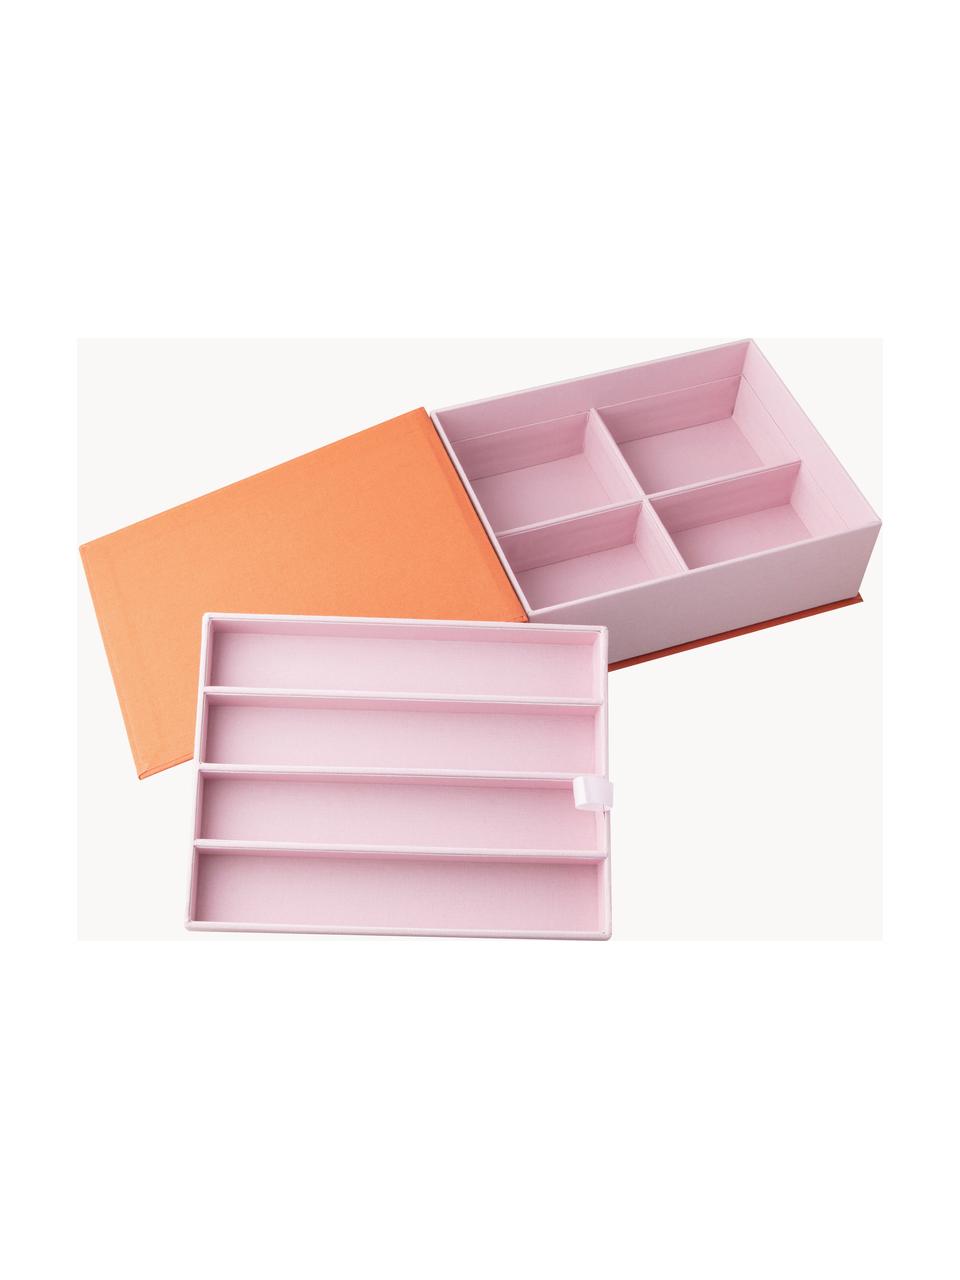 Skladovací krabička Small Things, 80 % šedý karton, 18 % polyester, 2 % bavlna, Oranžová, Š 23 cm, V 18 cm